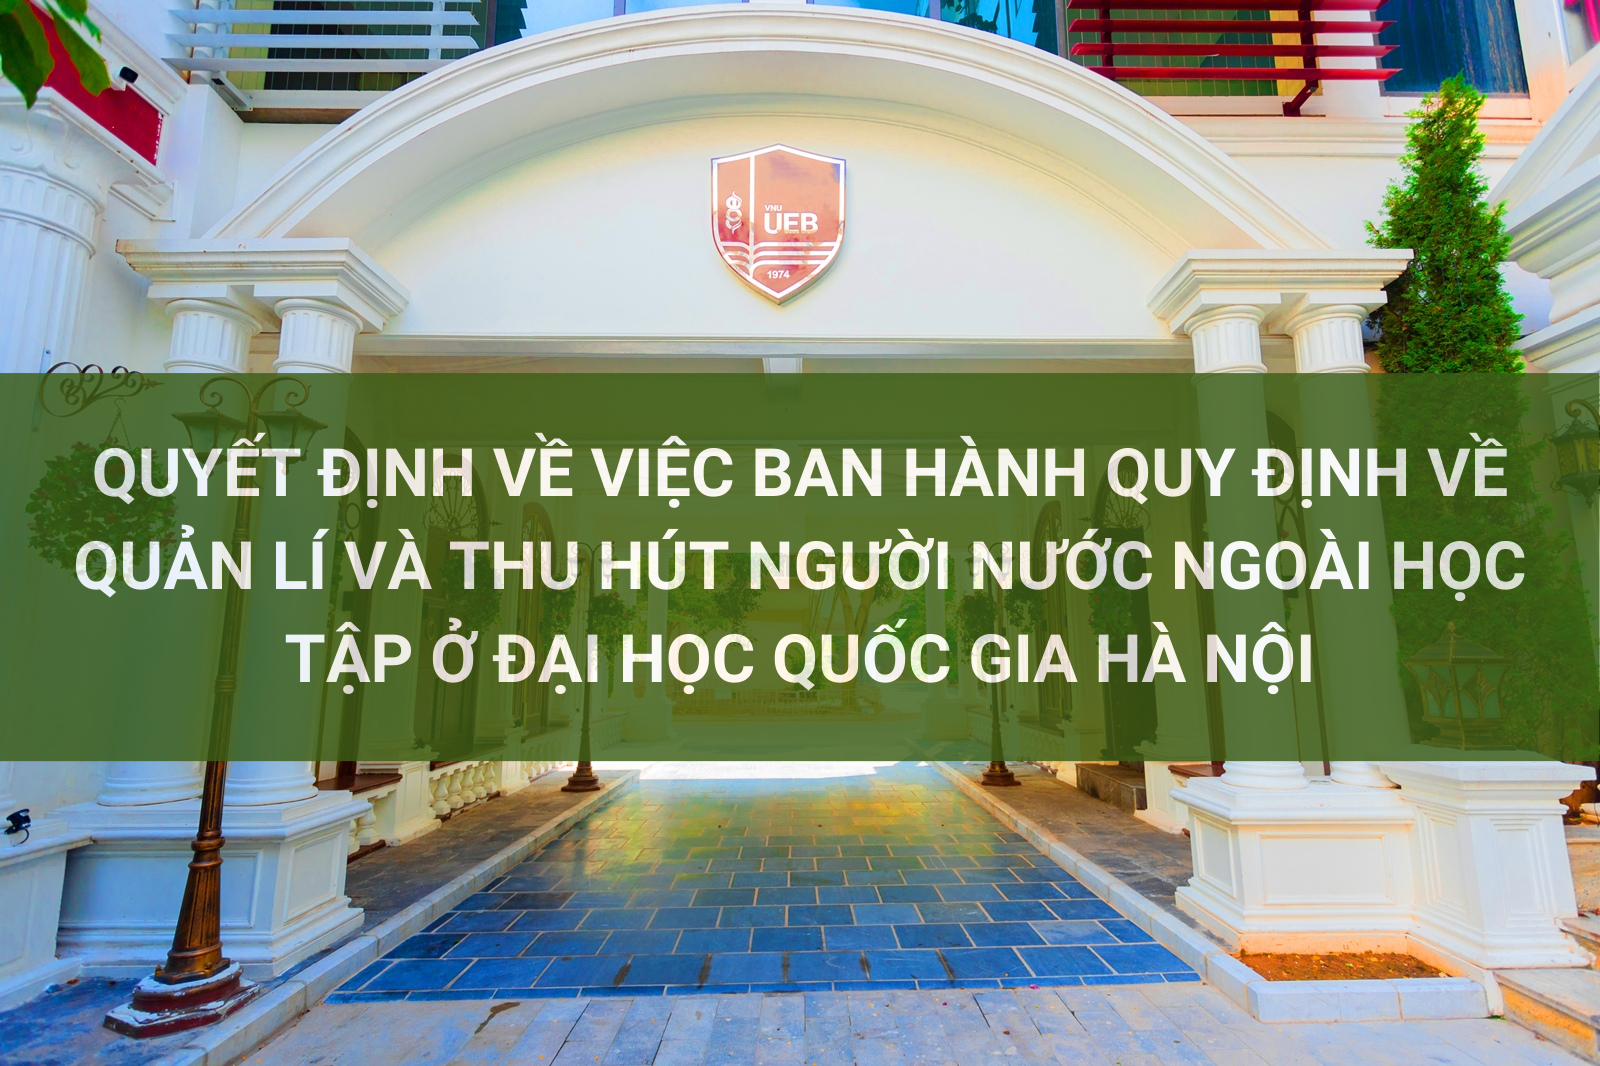 Quyết định về việc ban hành Quy định về quản lí và thu hút người nước ngoài học tập ở Đại học Quốc gia Hà Nội